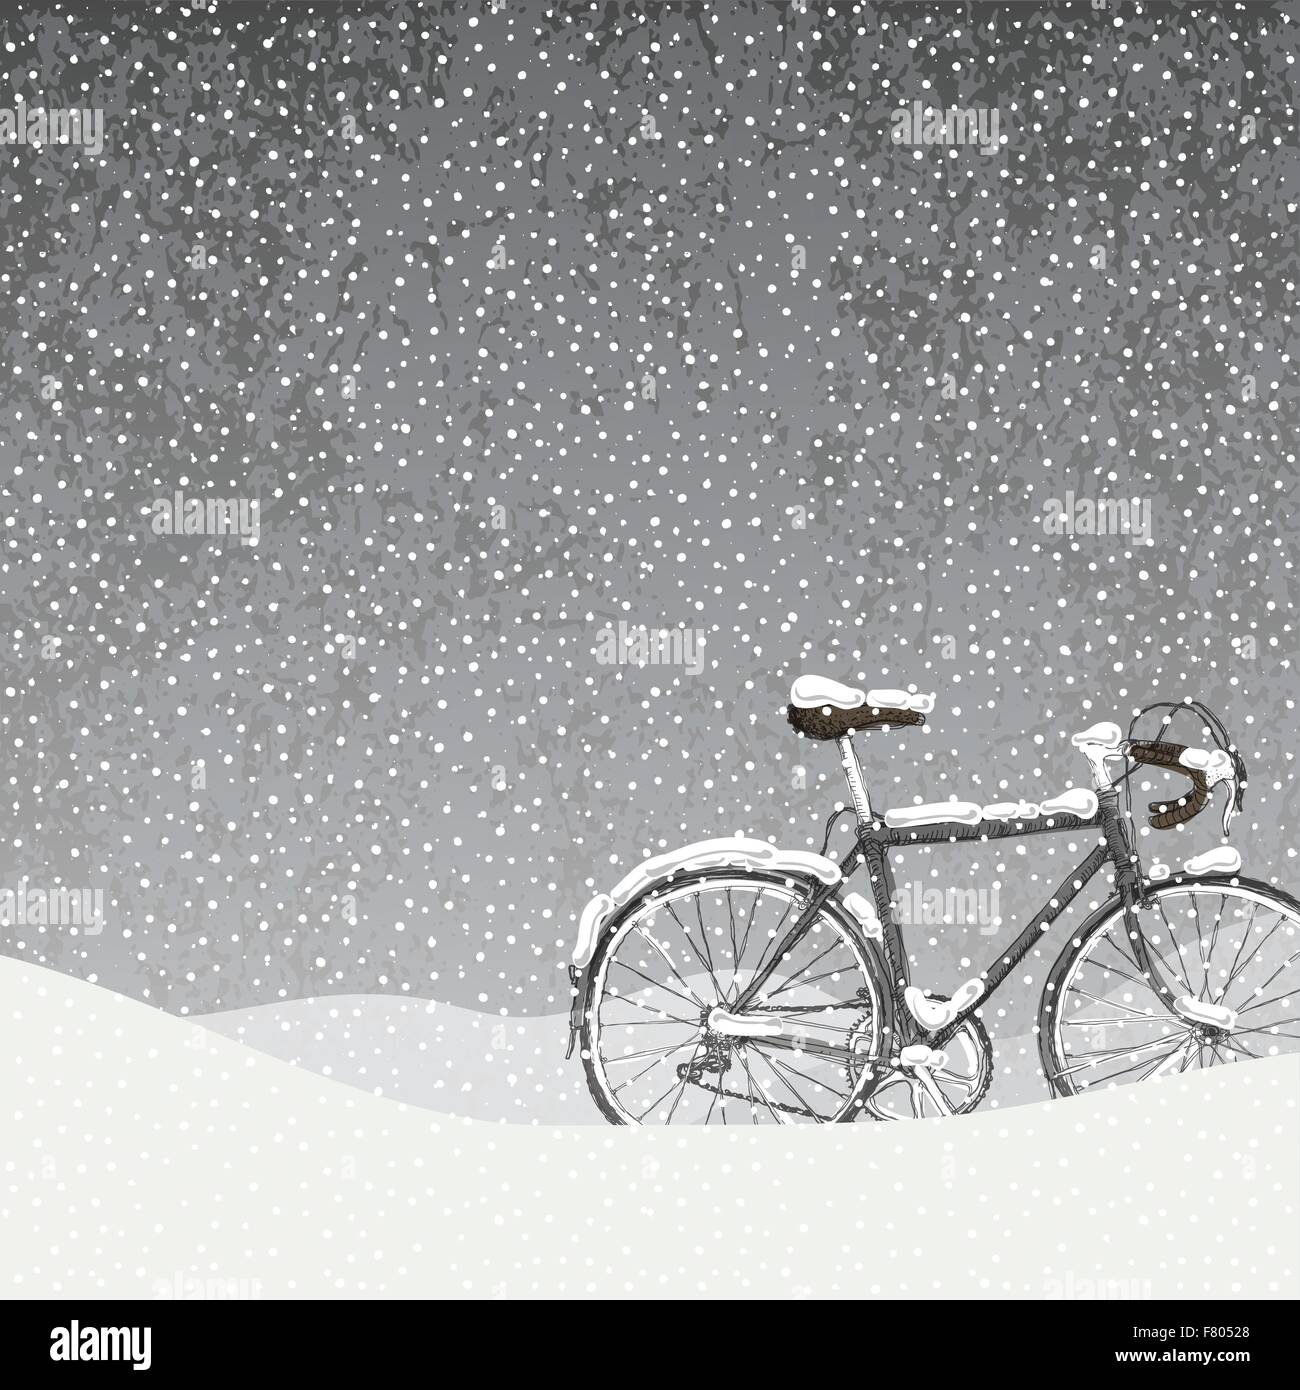 La neige a couvert Location Illustration, scène d'hiver calme Illustration de Vecteur